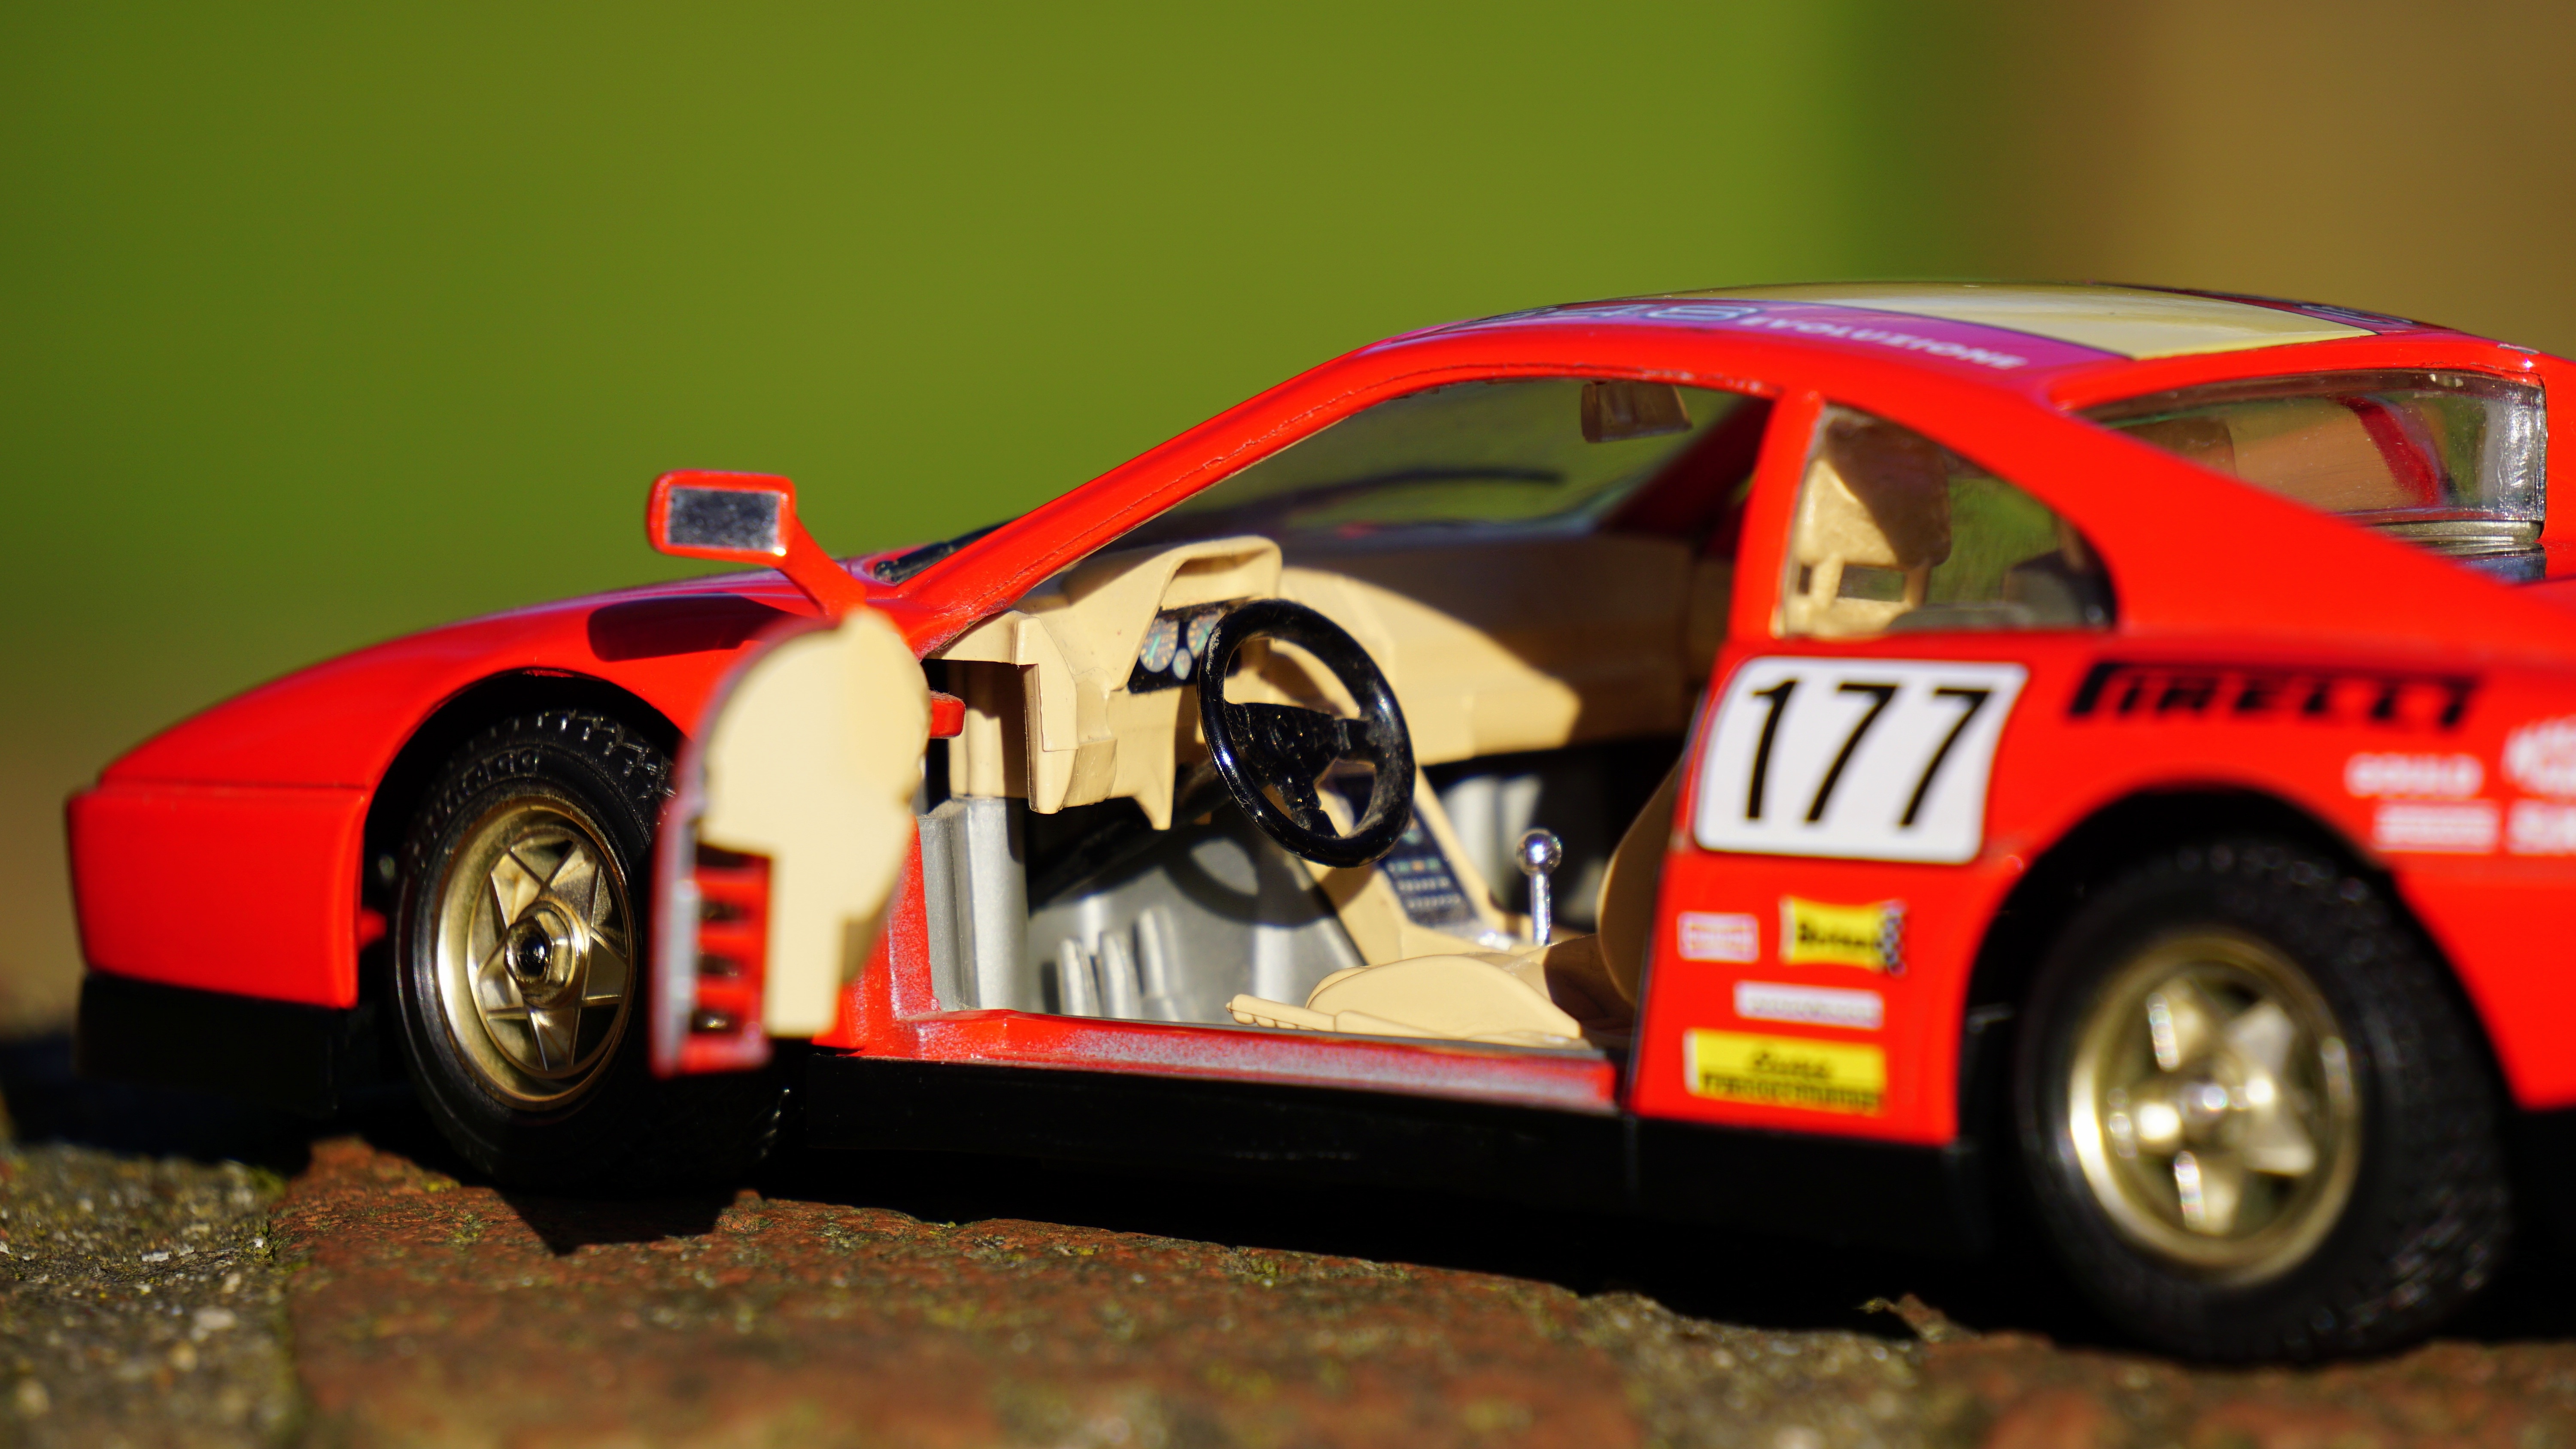 red 177 racing car die cast scale model